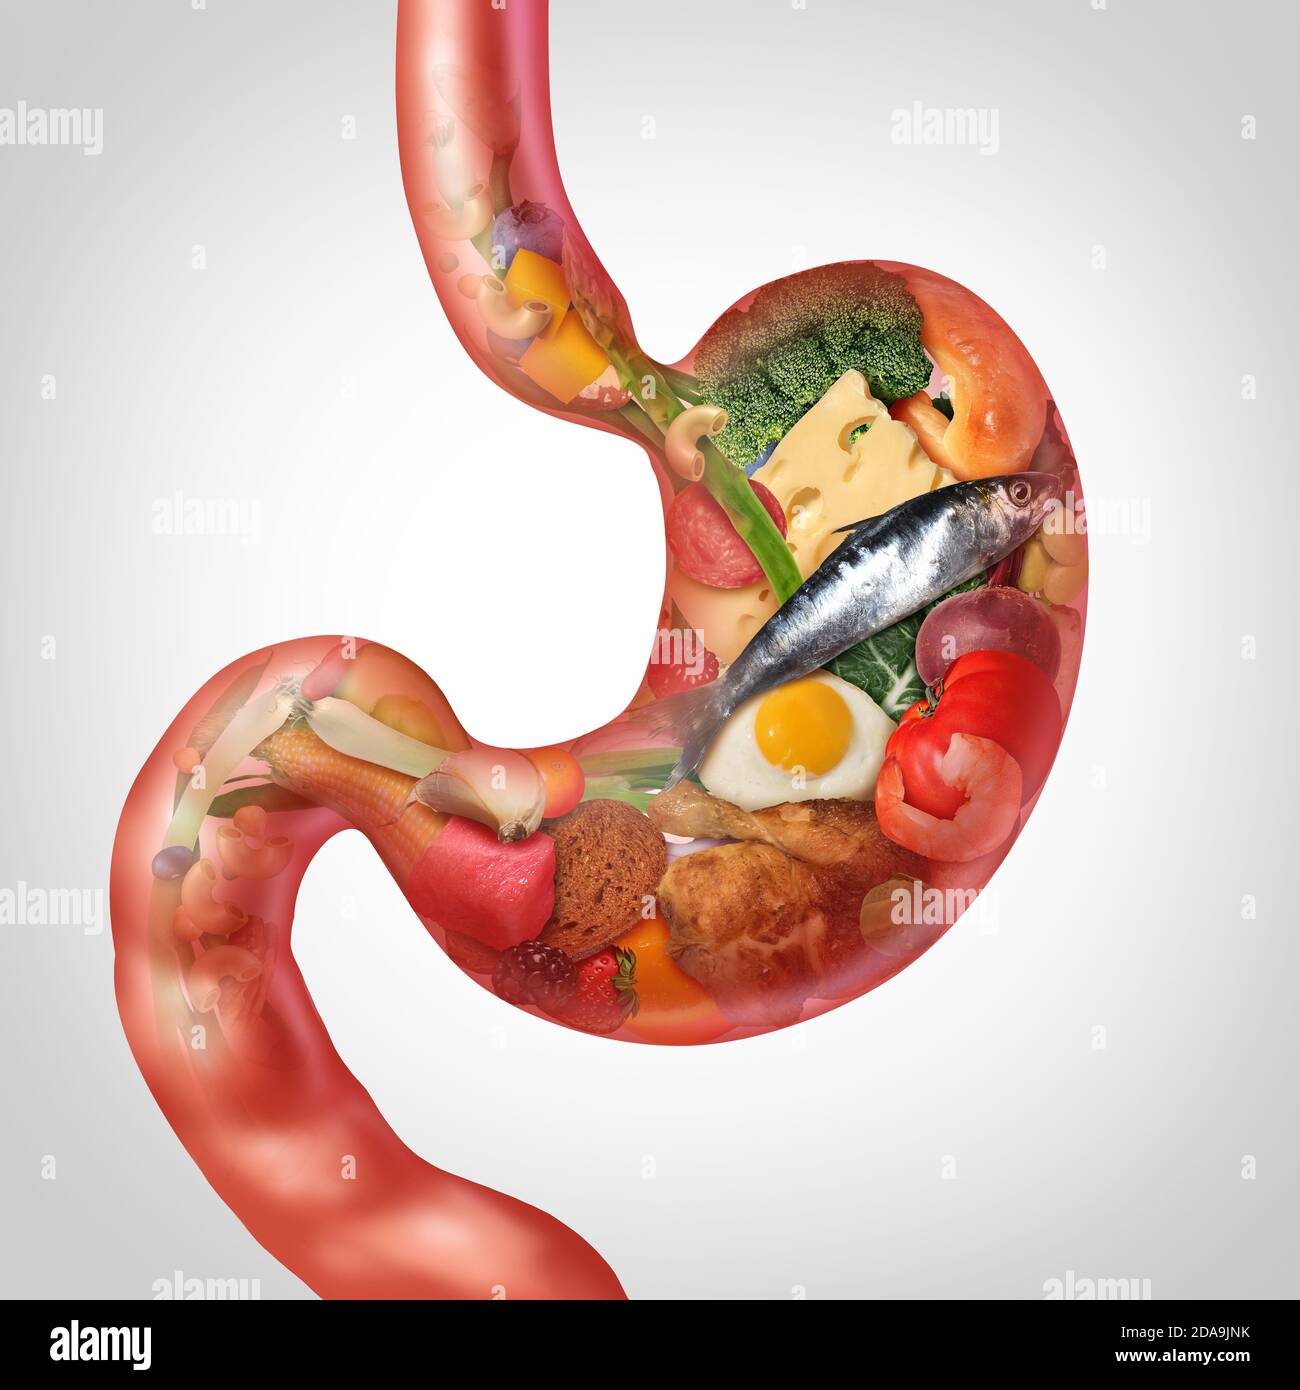 La digestione del cibo e la nutrizione di digestione come ingredienti modellati come uno stomaco che rappresenta la salute gastrointestinale o problemi digestivi. Foto Stock